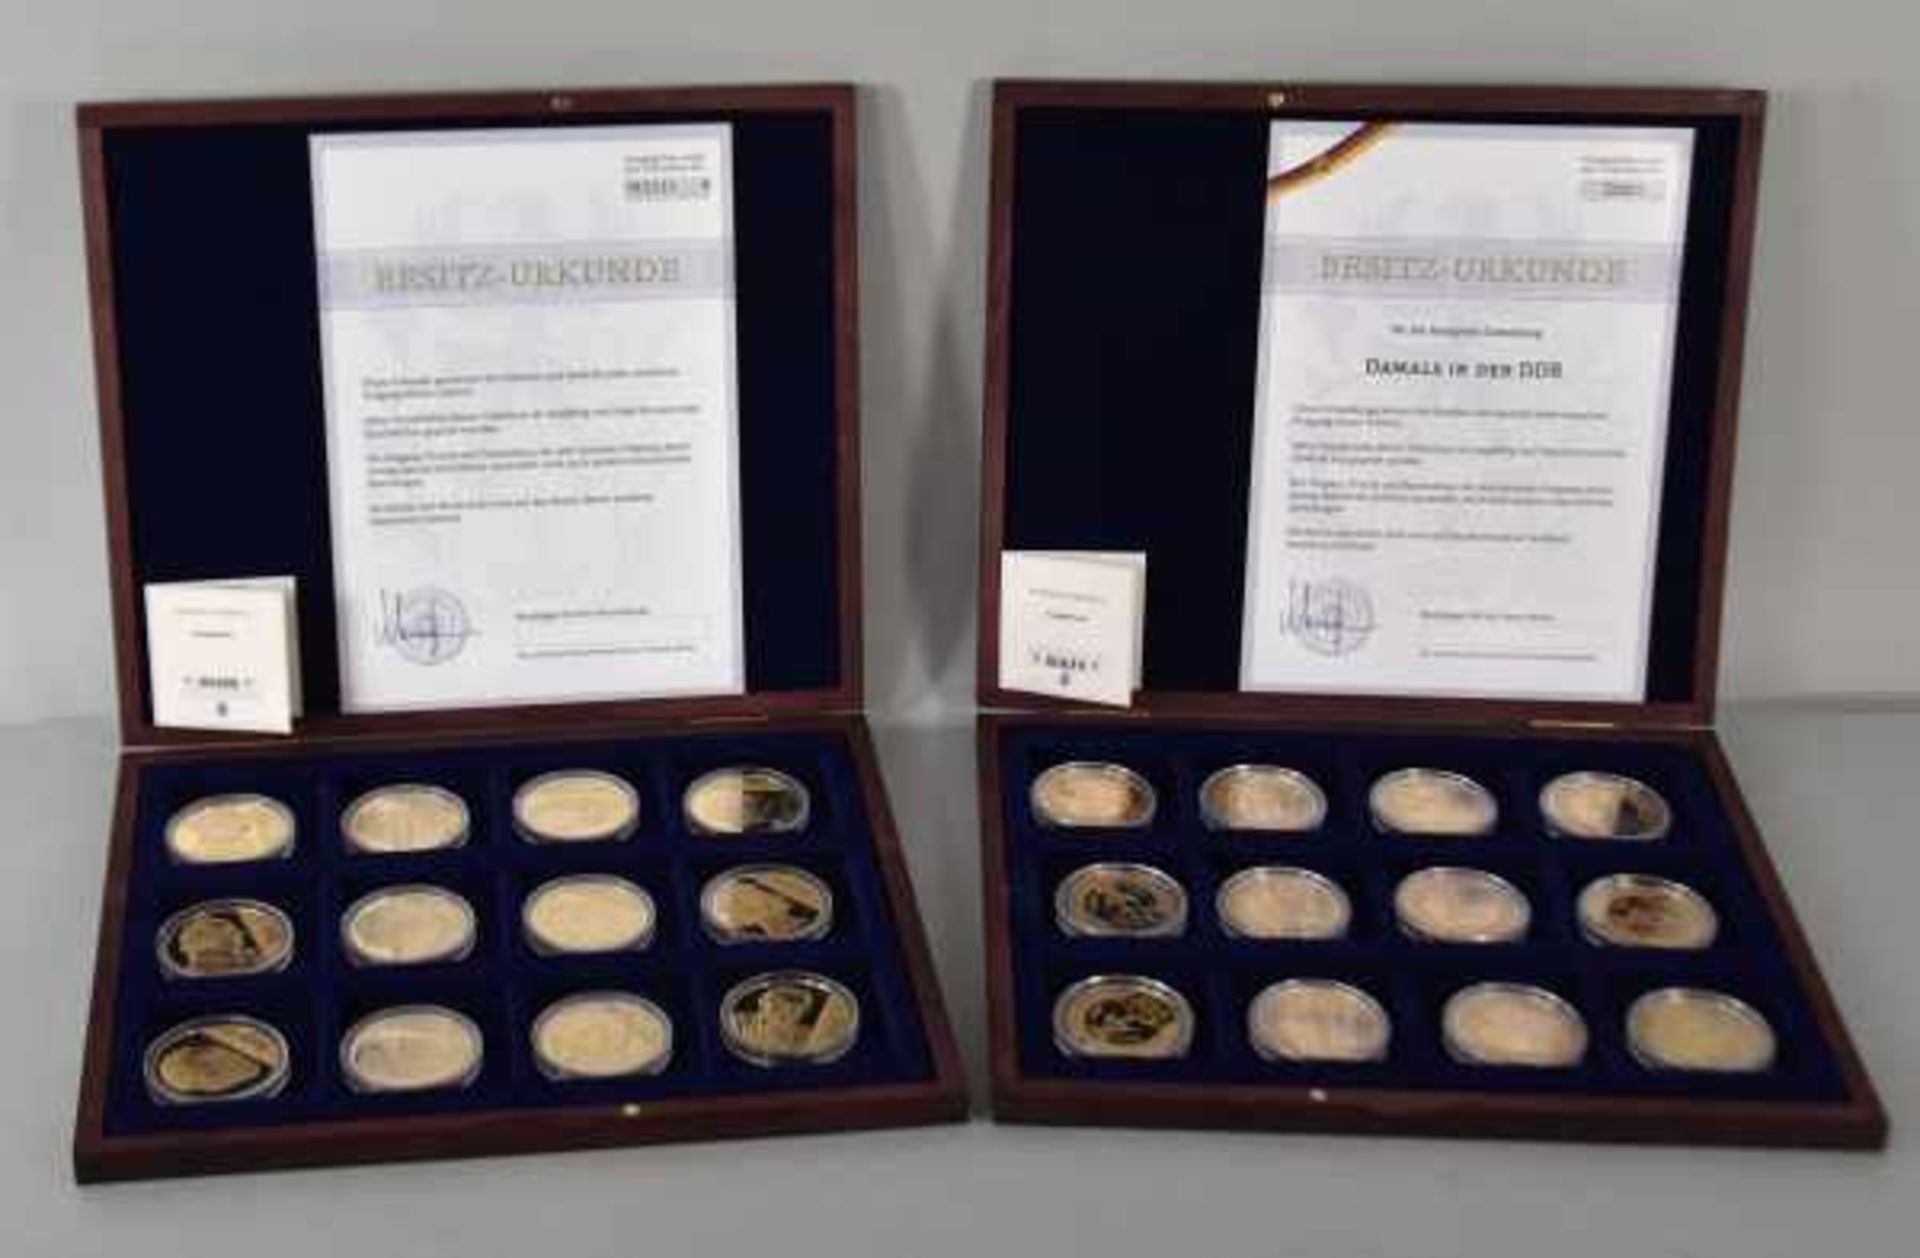 VIER MUENZSAMMLUNGEN verschieden: "Damals in der DDR" 12 Münzen, kupfer-vergoldet, D 40 mm PP, im - Bild 2 aus 8